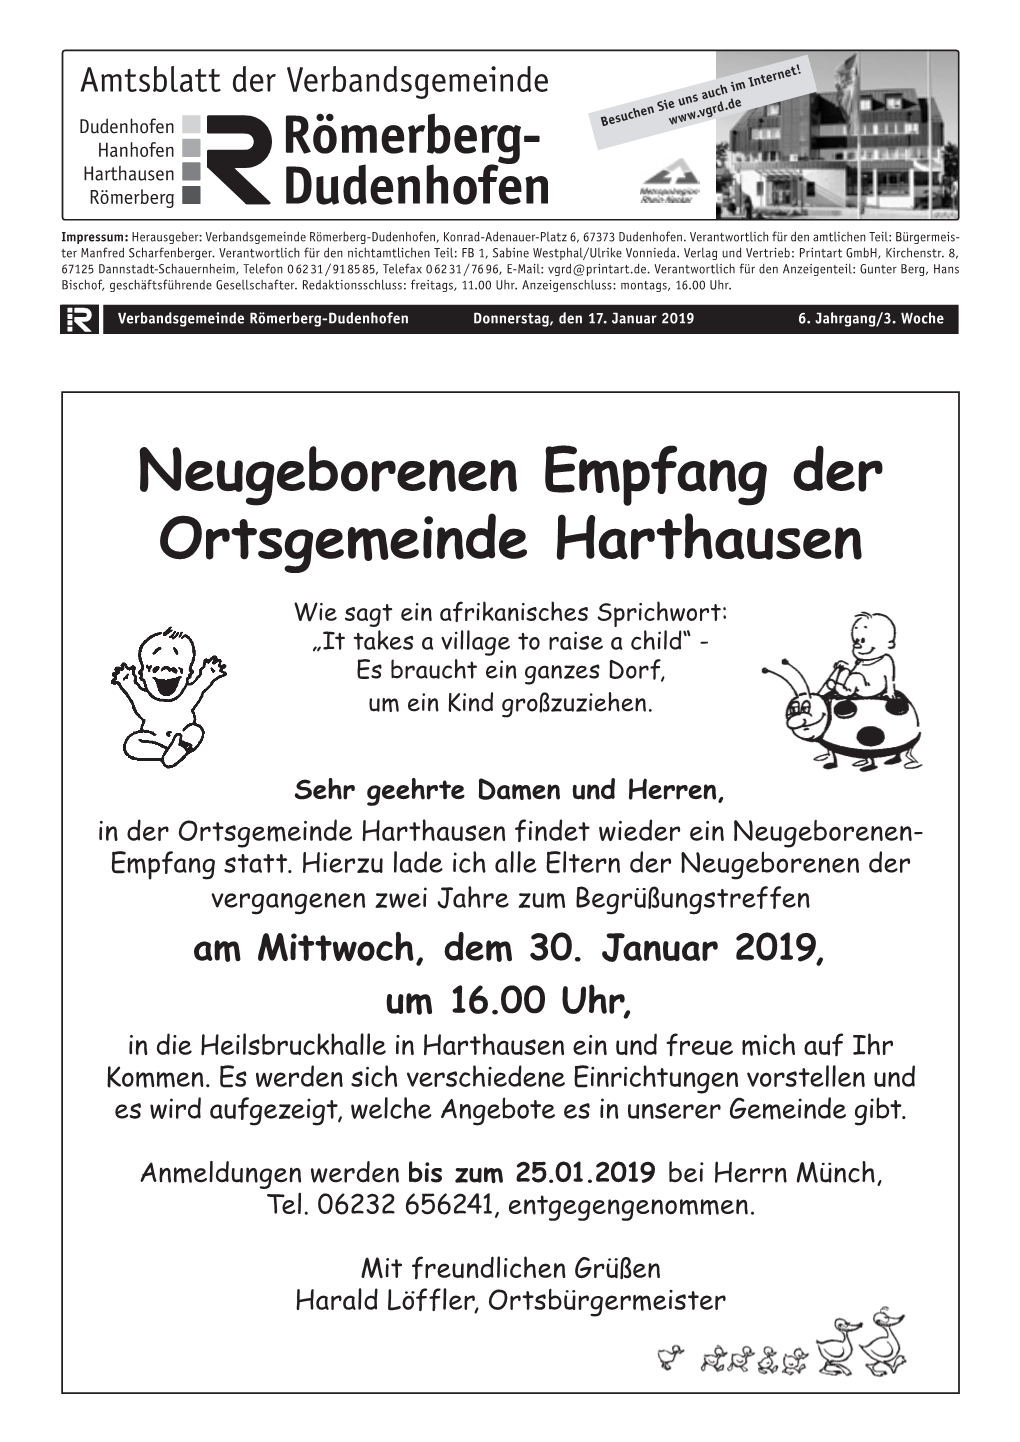 Neugeborenen Empfang Der Ortsgemeinde Harthausen